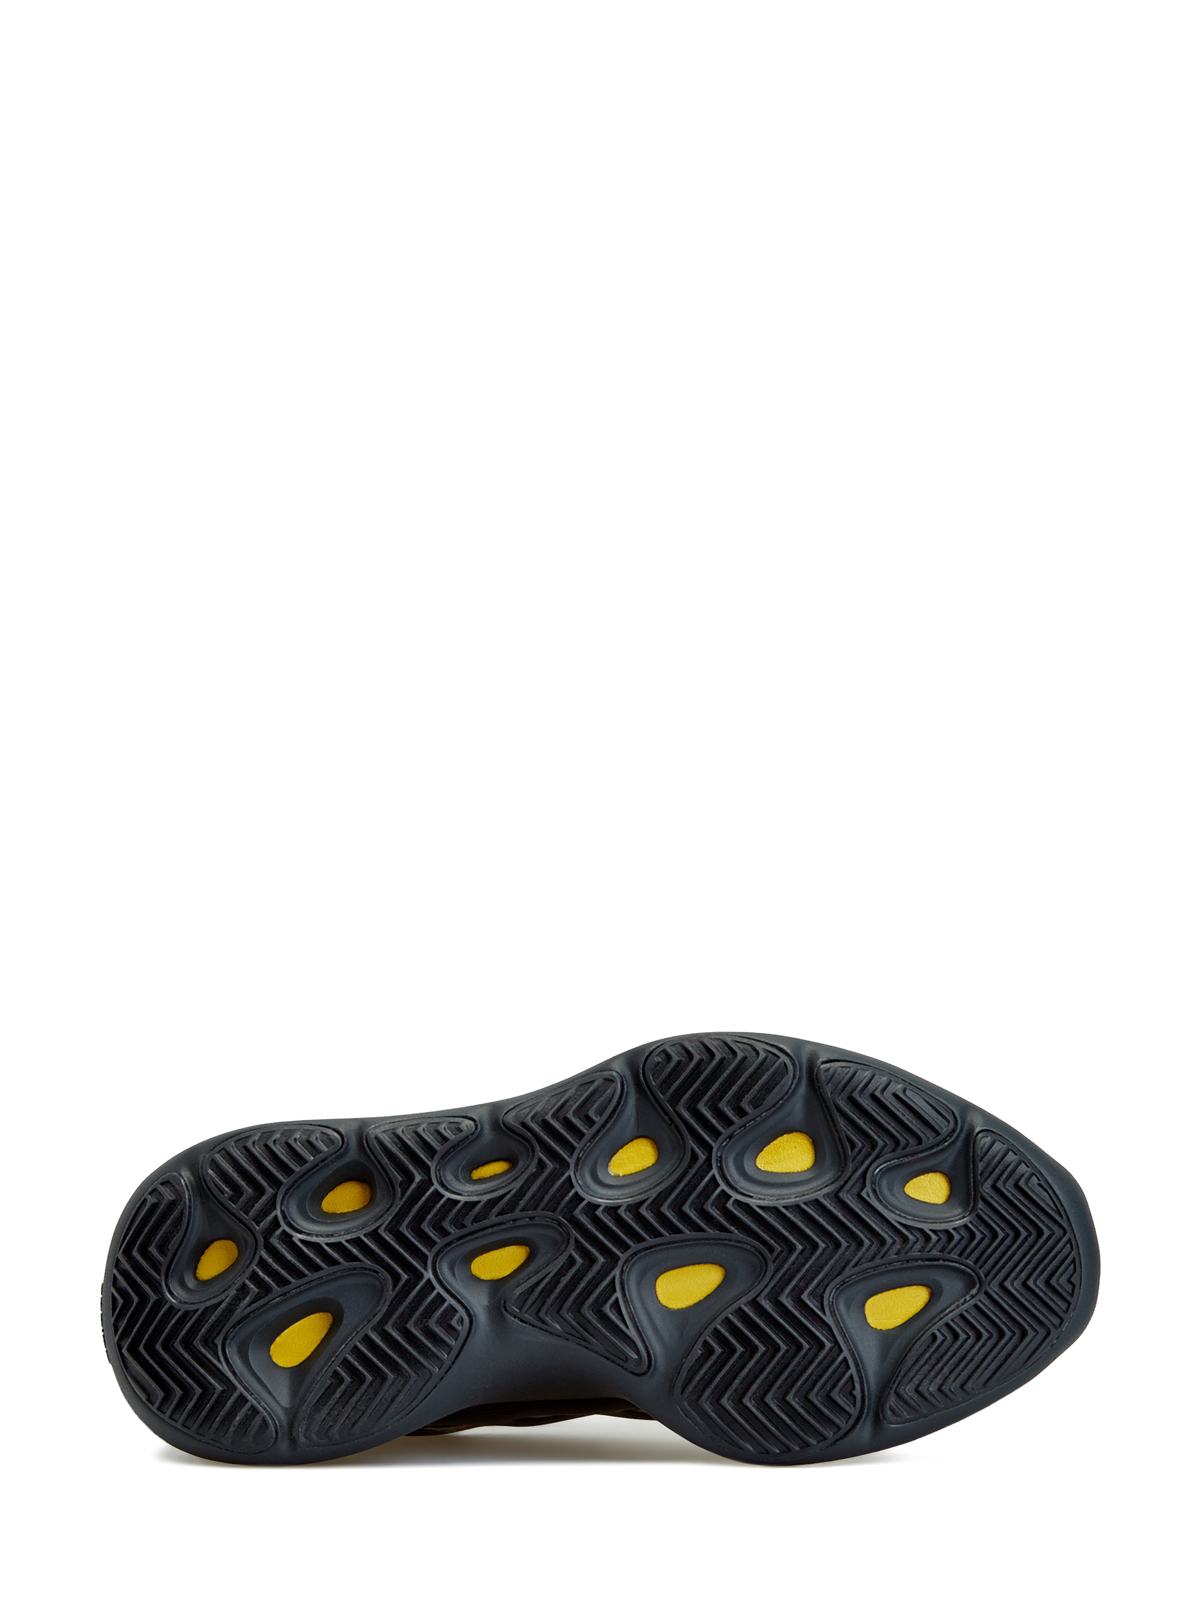 Кроссовки Yeezy 700 V3 'Alvah' Yeezy, цвет черный, размер 38.5 - фото 5